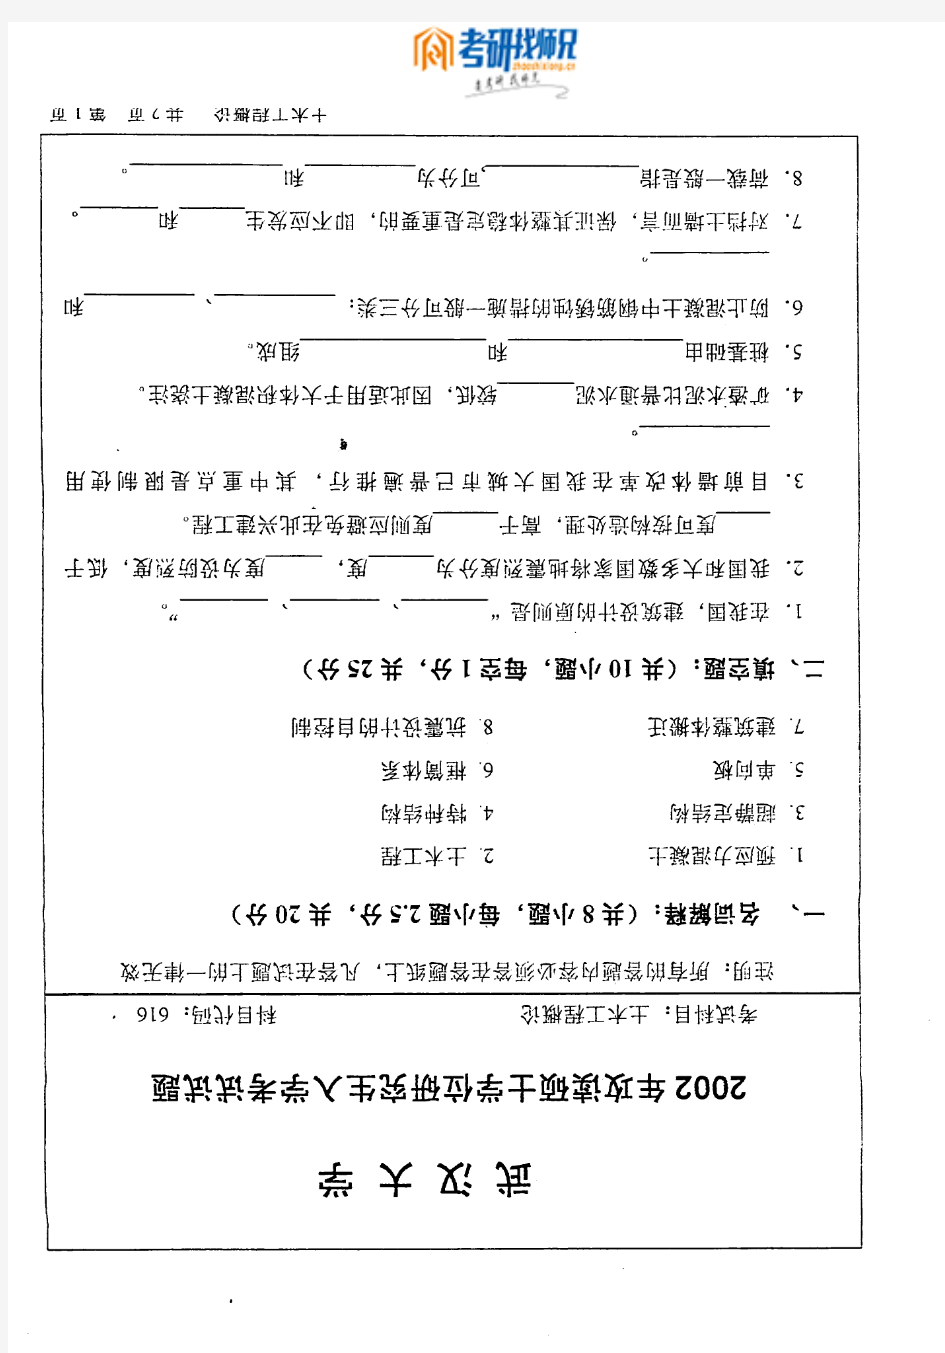 武汉大学土木工程概论-2002真题